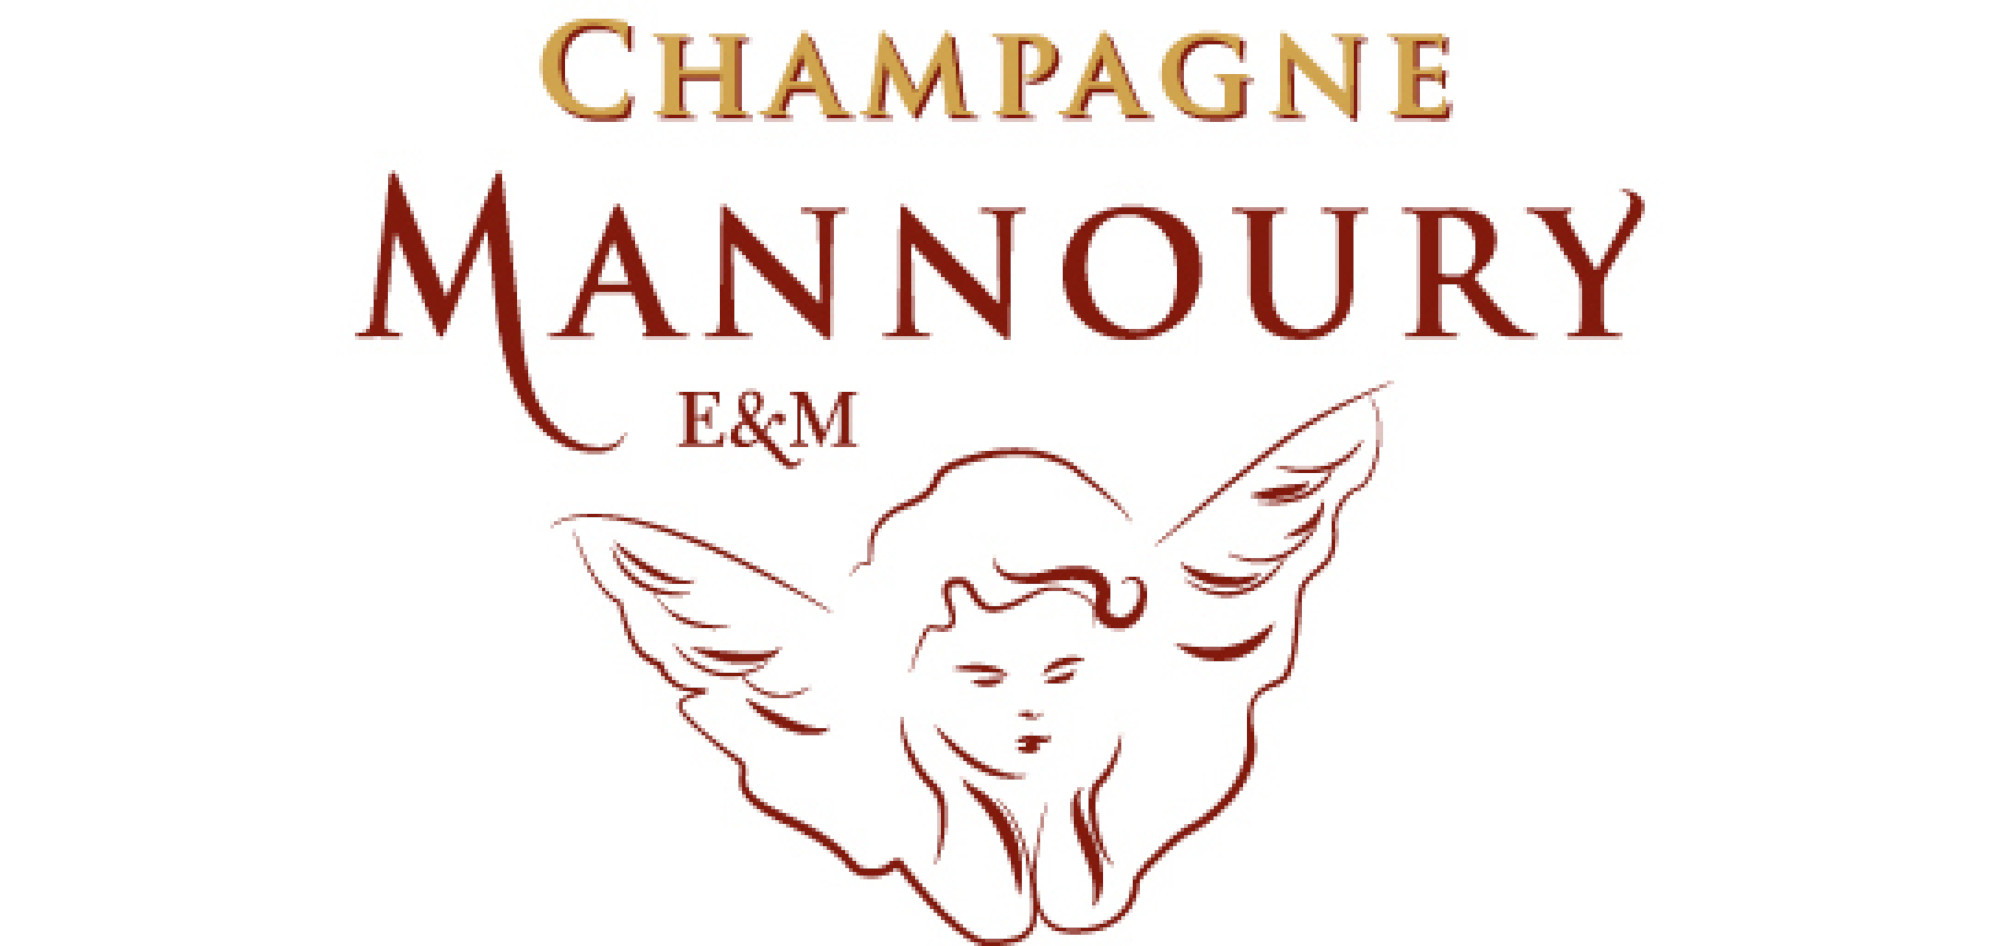 Champagne Mannoury E. & M.